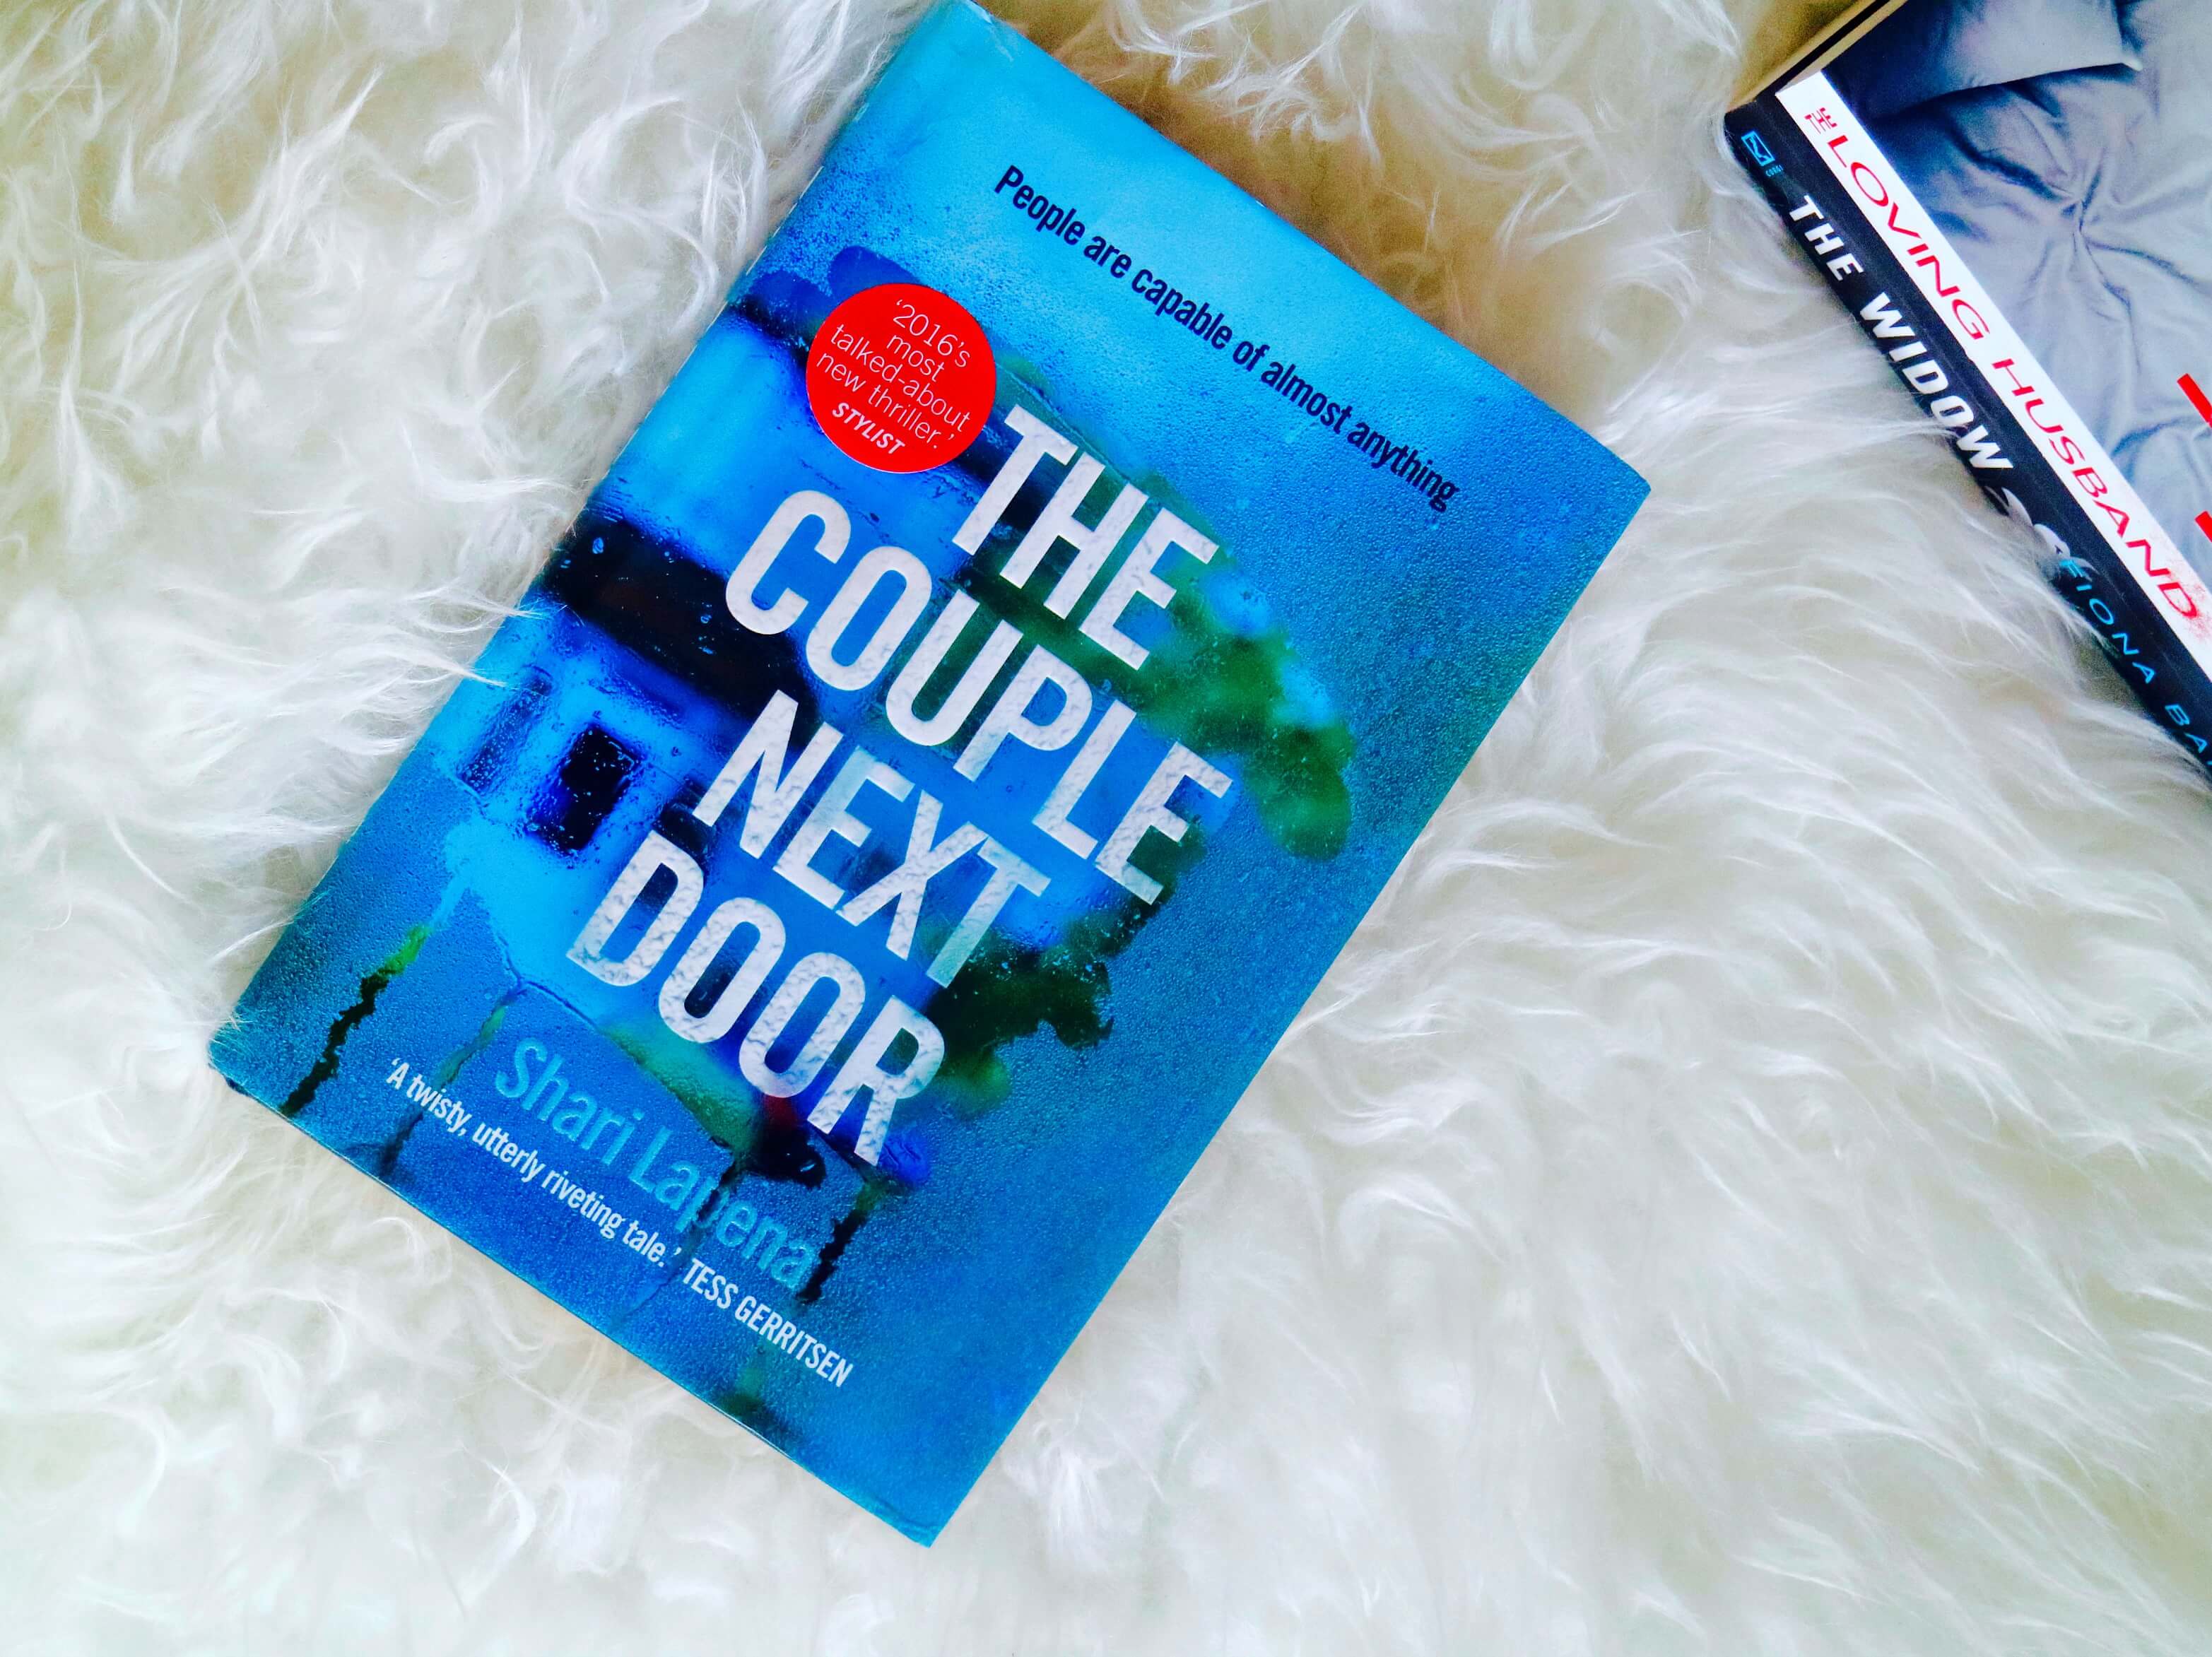 The couple next door book review